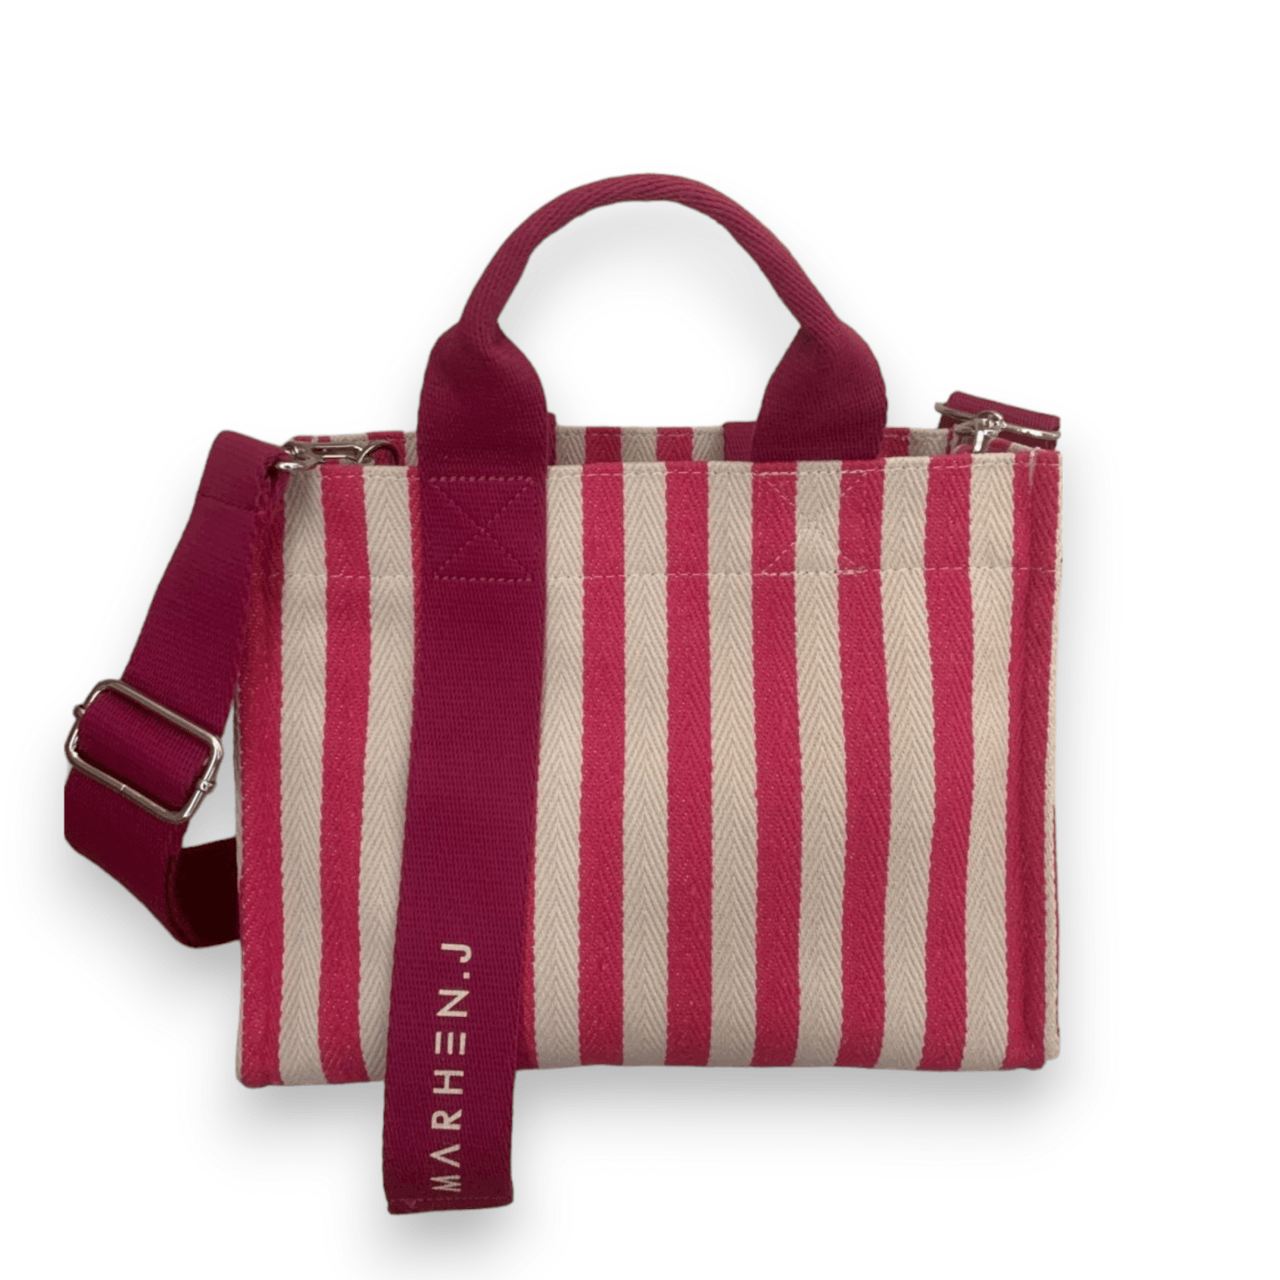 marhen j Pink & White Stripes Sling Bag